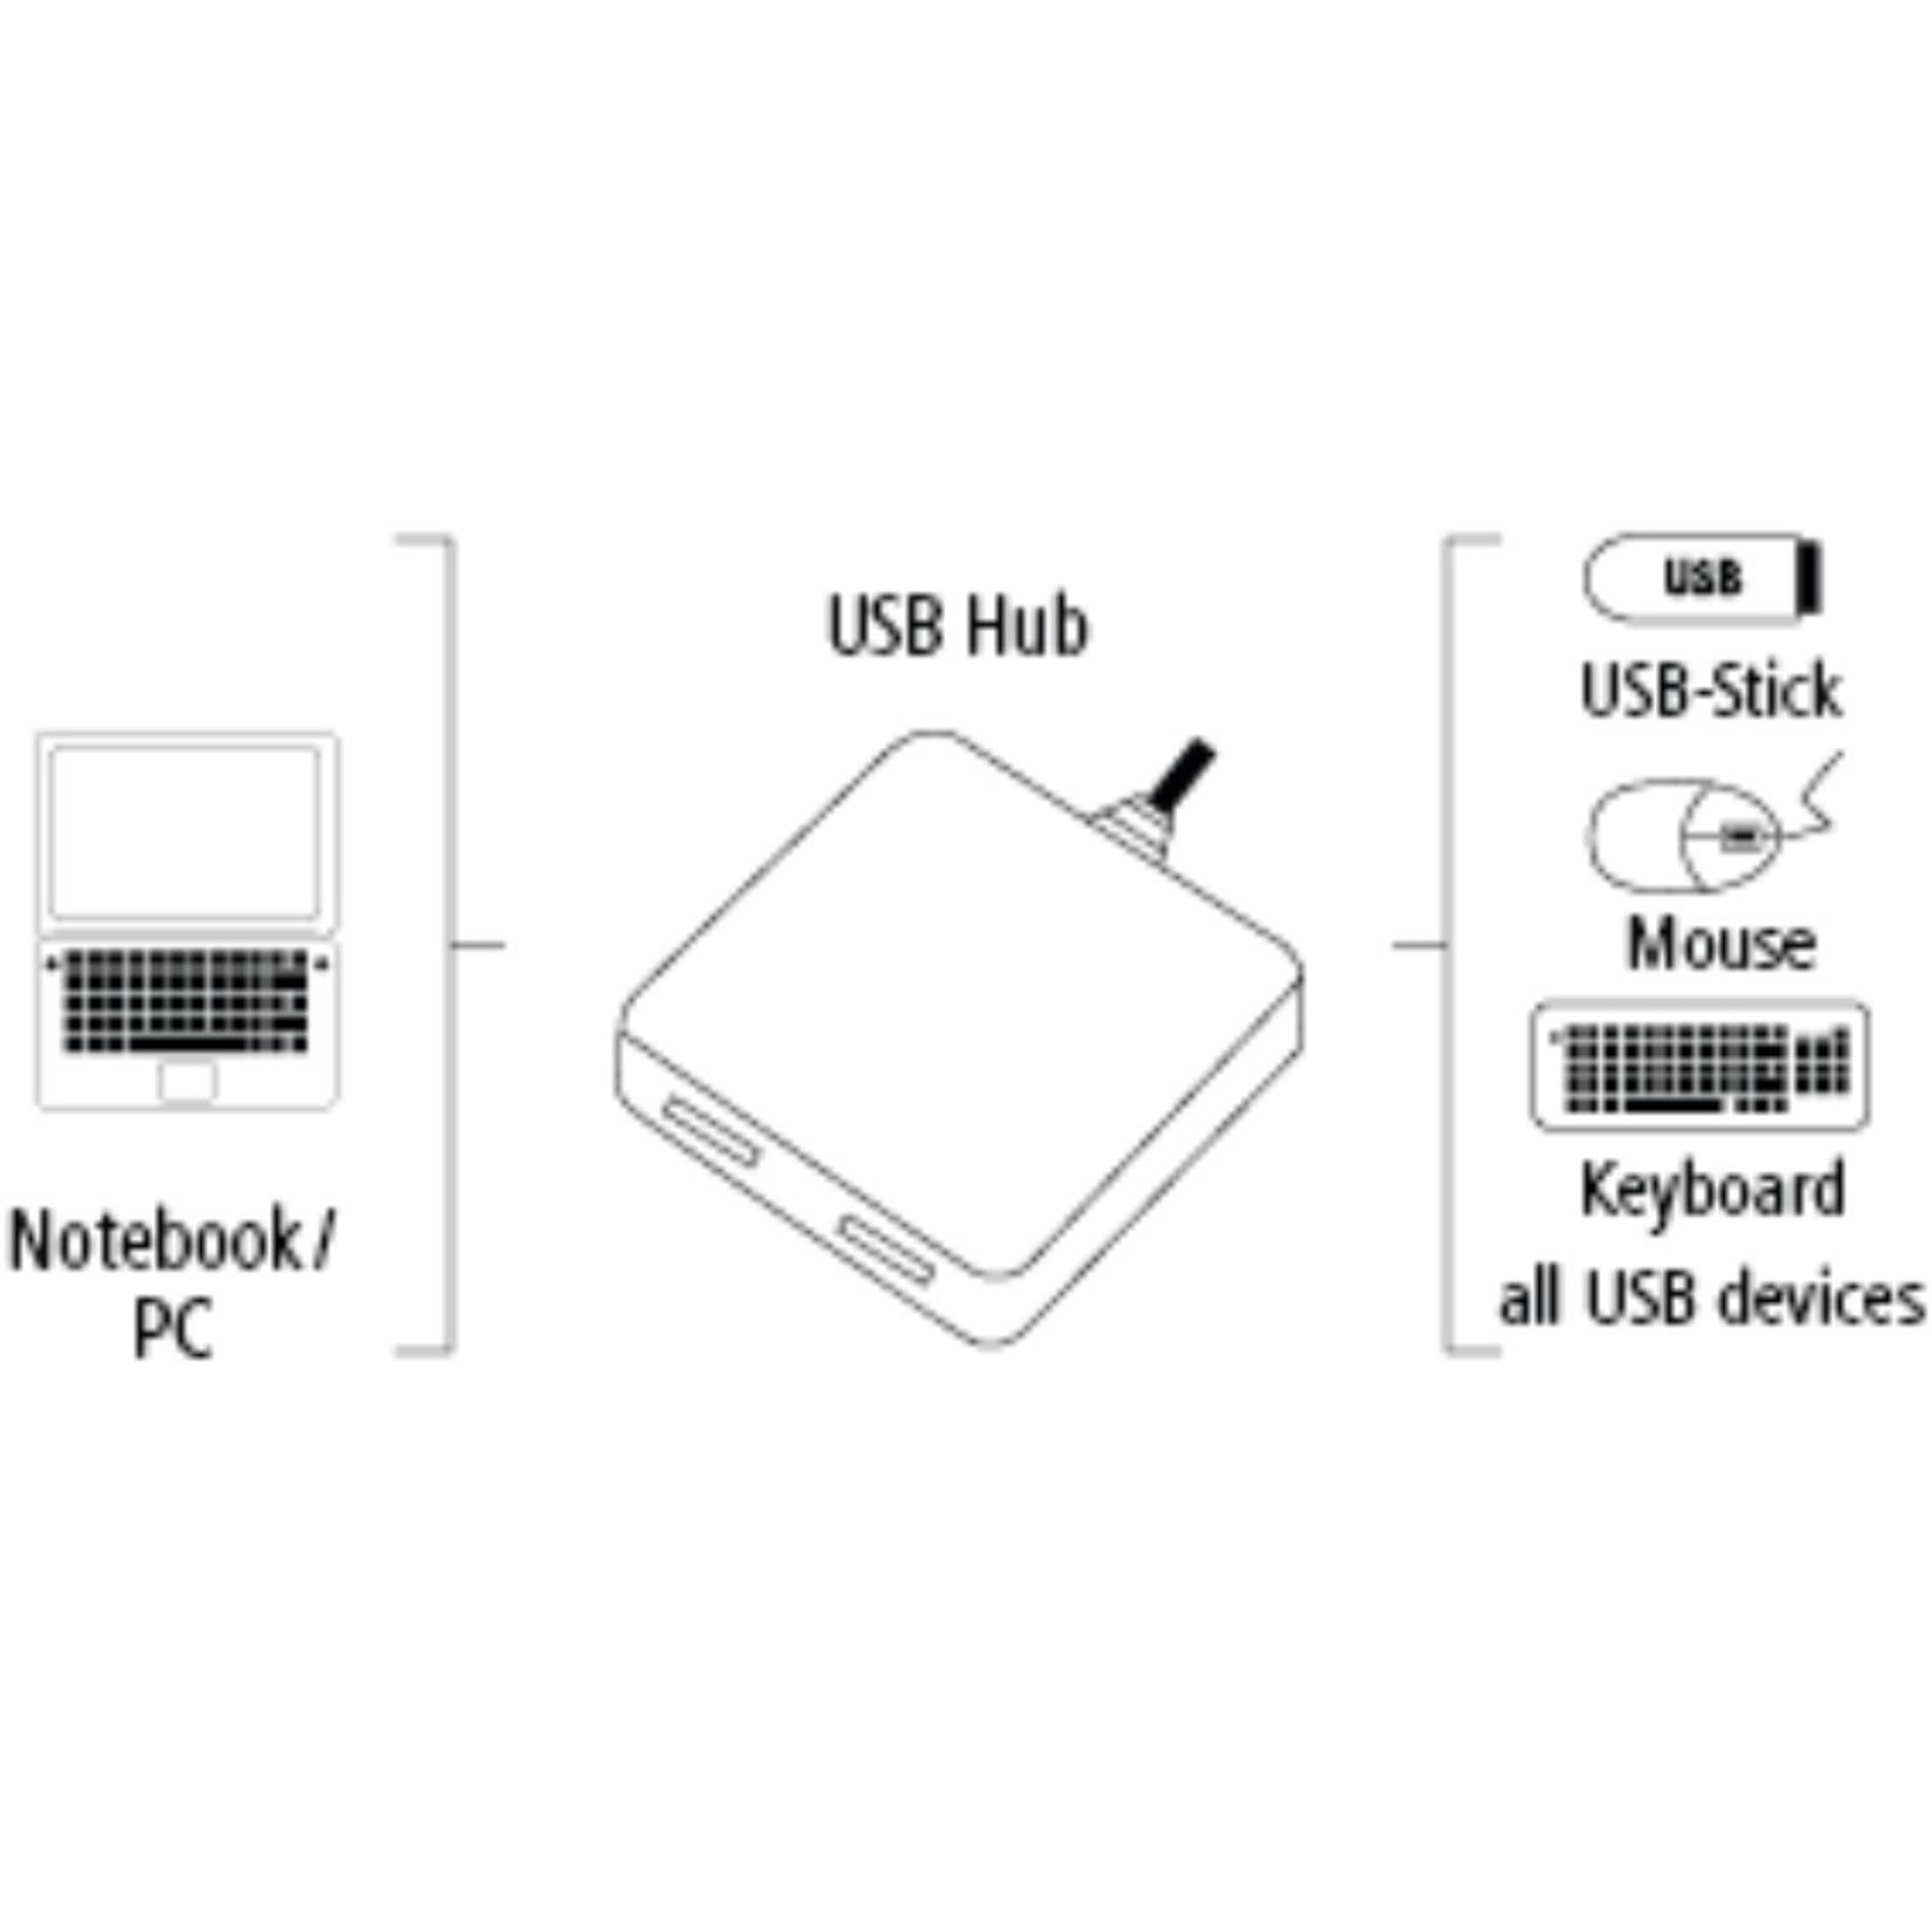 HAMA 1:4 BUSP. USB2.0 012131 USB-2.0-Hub, IK26, HUB Schwarz